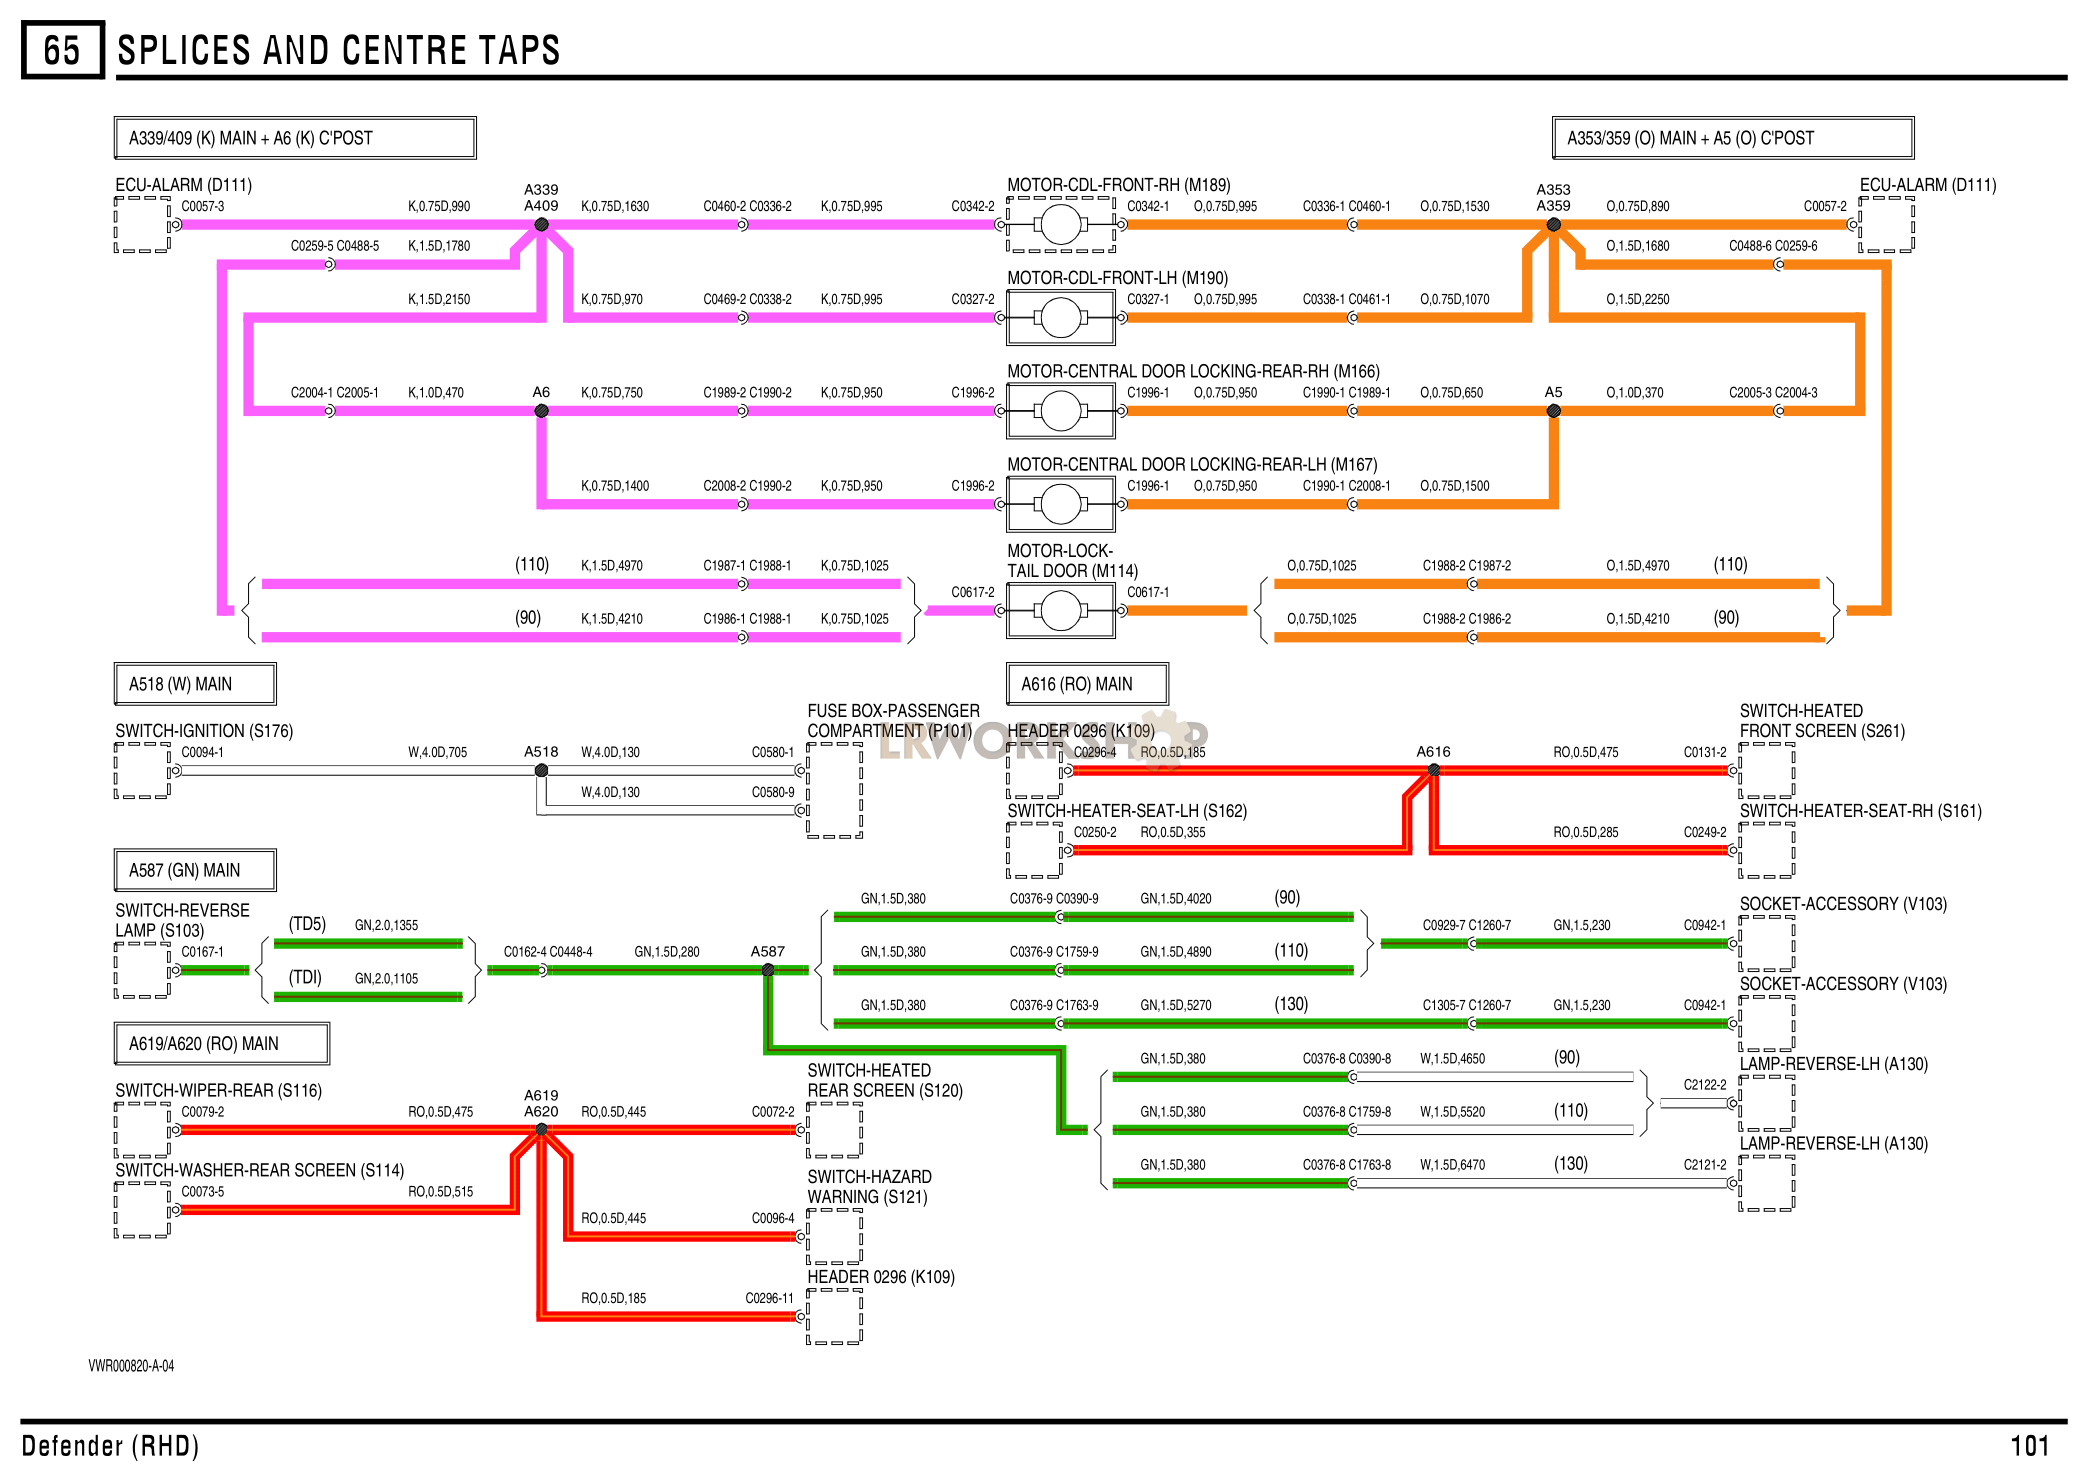 Splices & Centre Taps Part Diagram